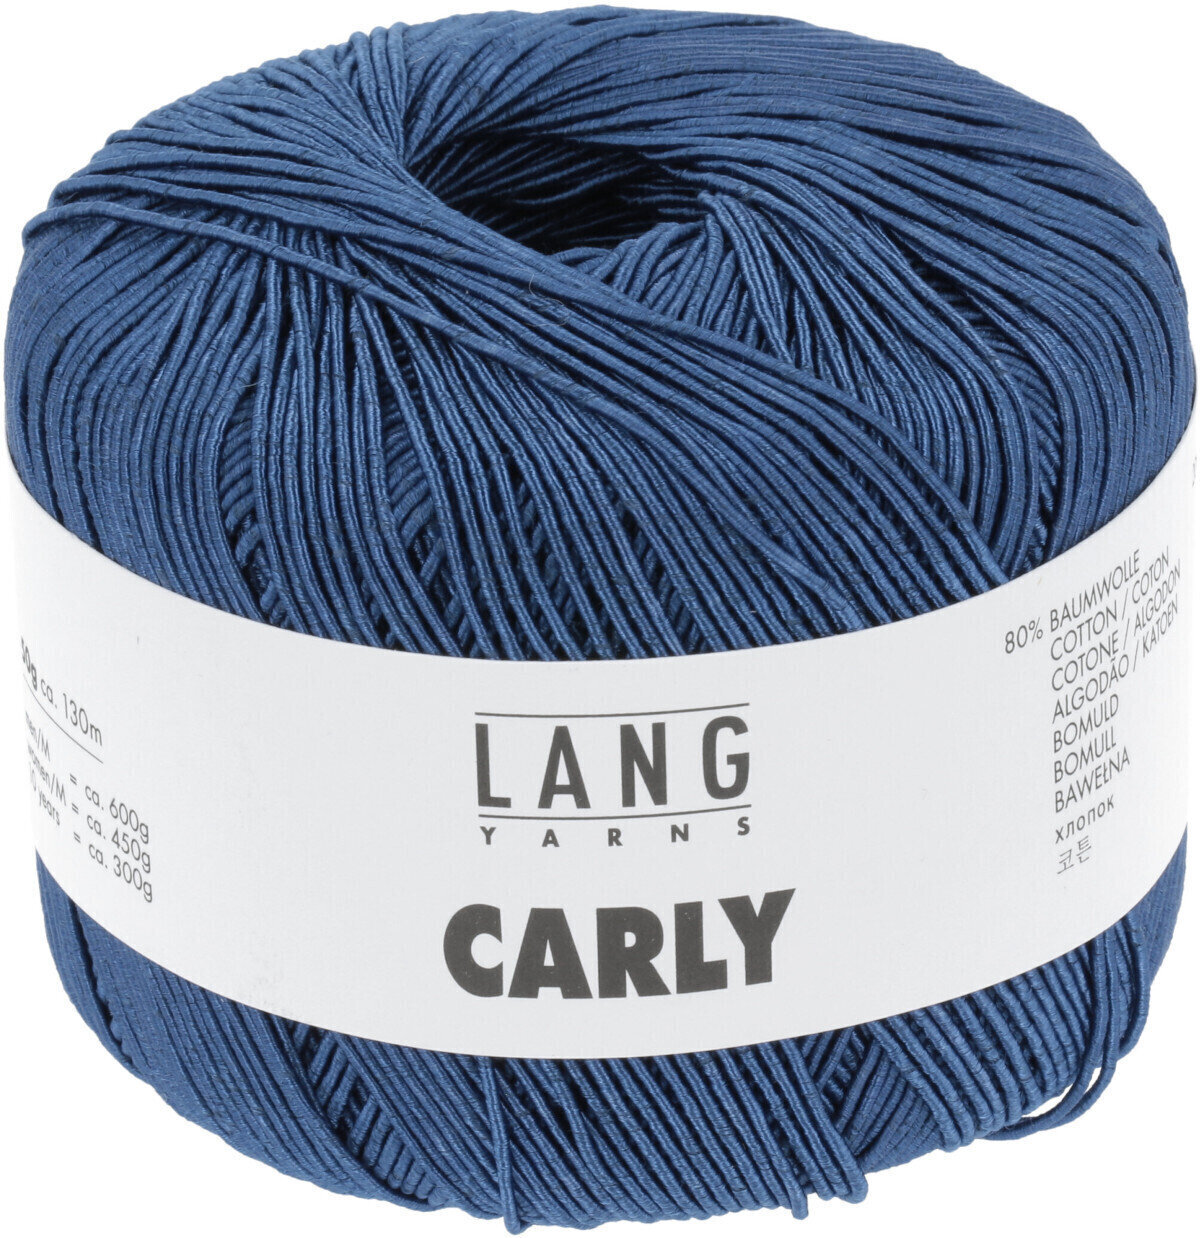 Νήμα Πλεξίματος Lang Yarns Carly 0035 Blue Marine